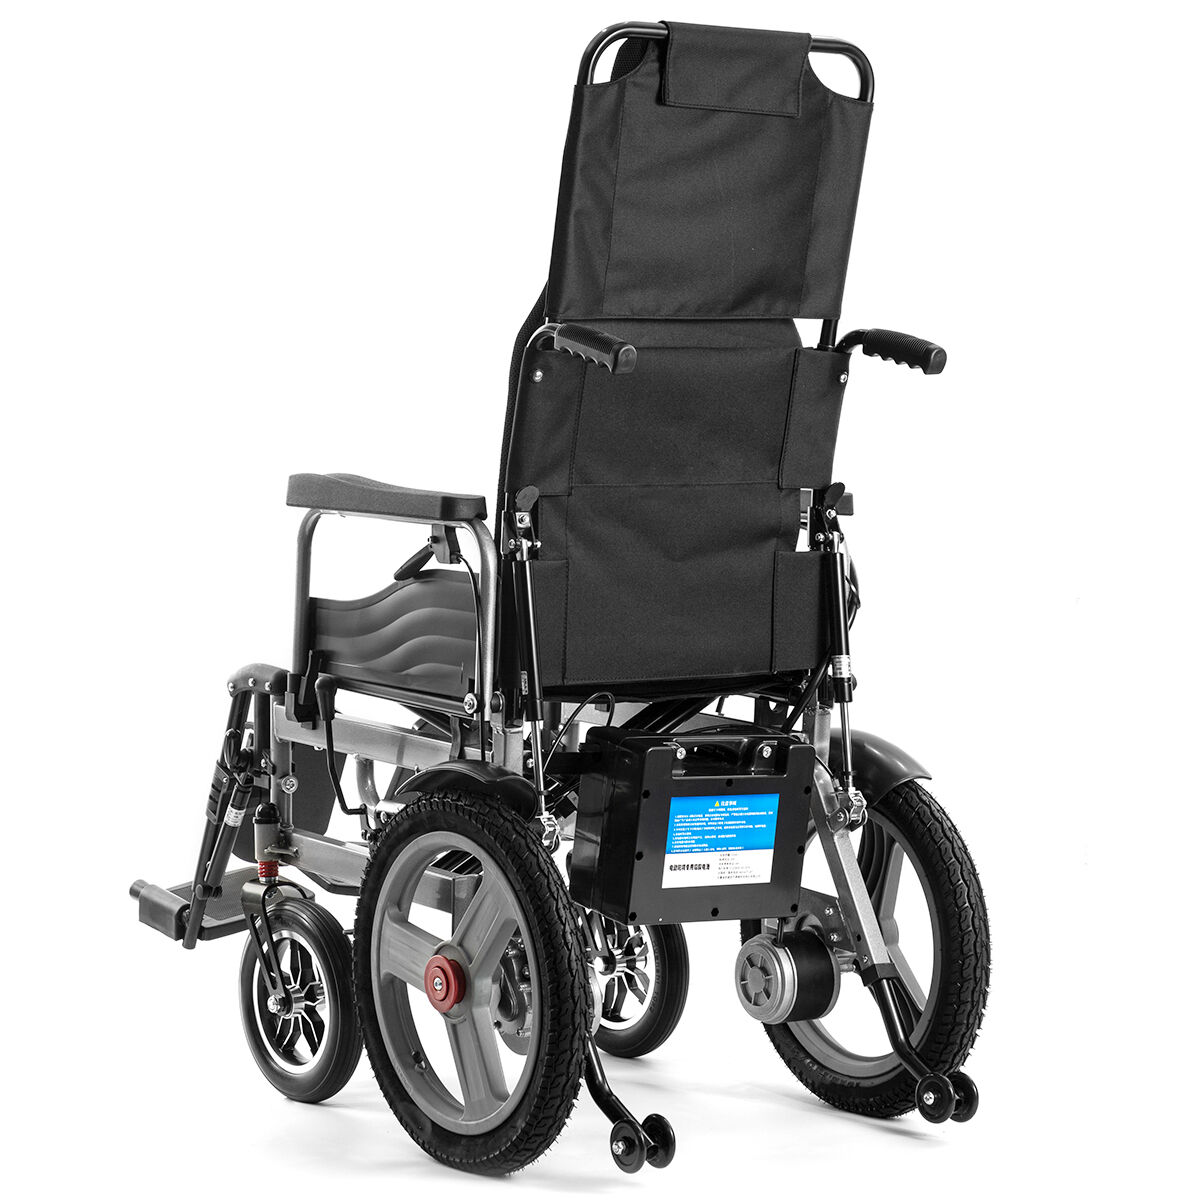 BC-ES6003A-LW nolaižams elektriskais ratiņkrēsls visā reljefā salokāms